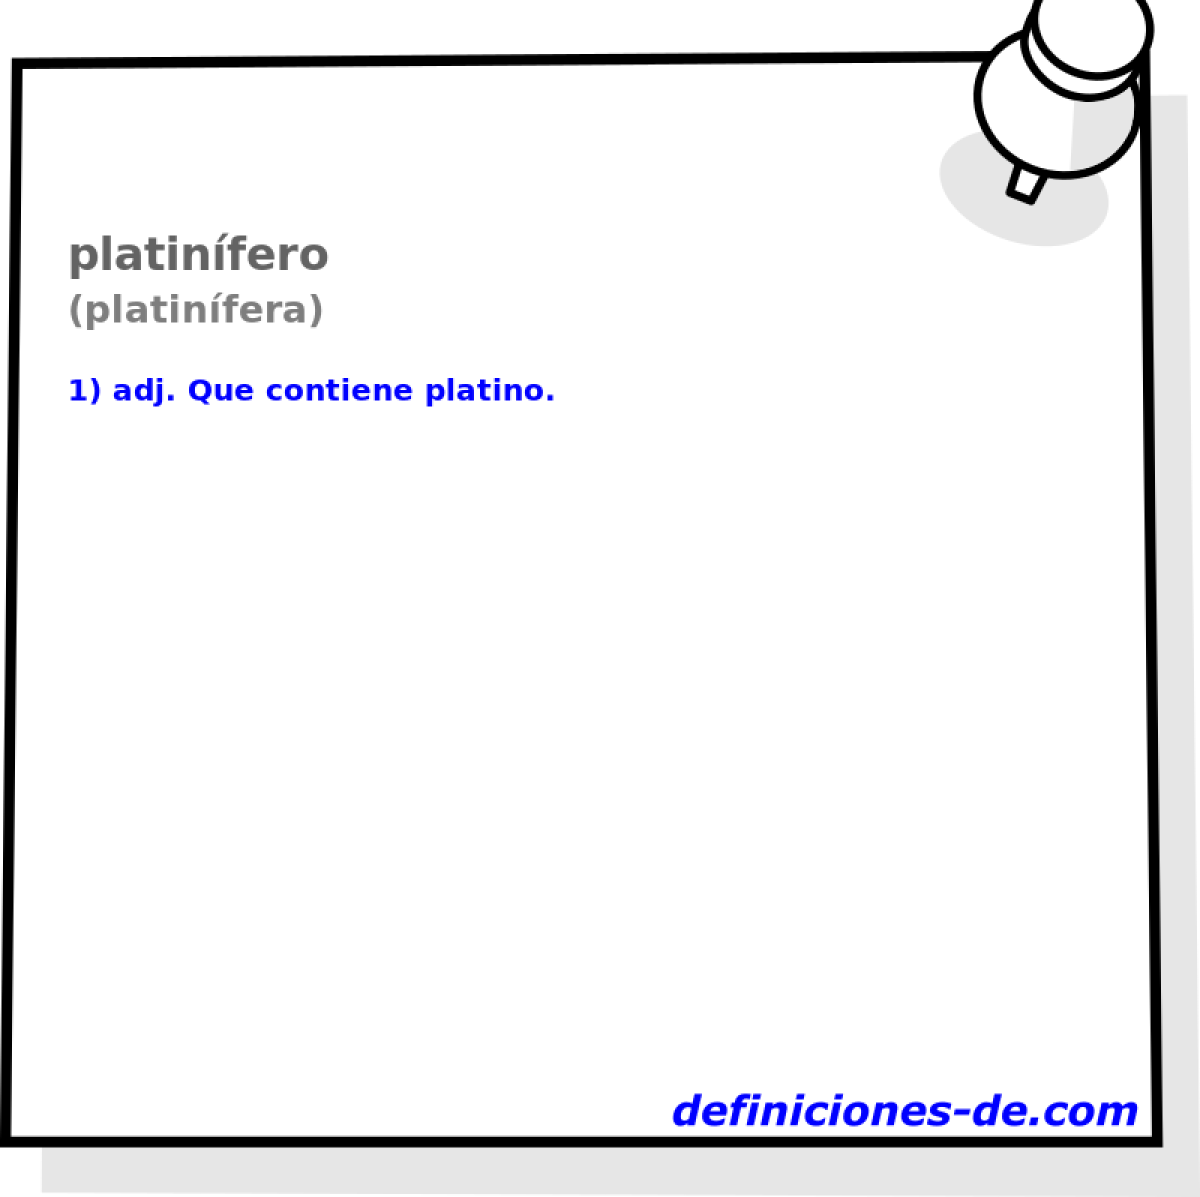 platinfero (platinfera)